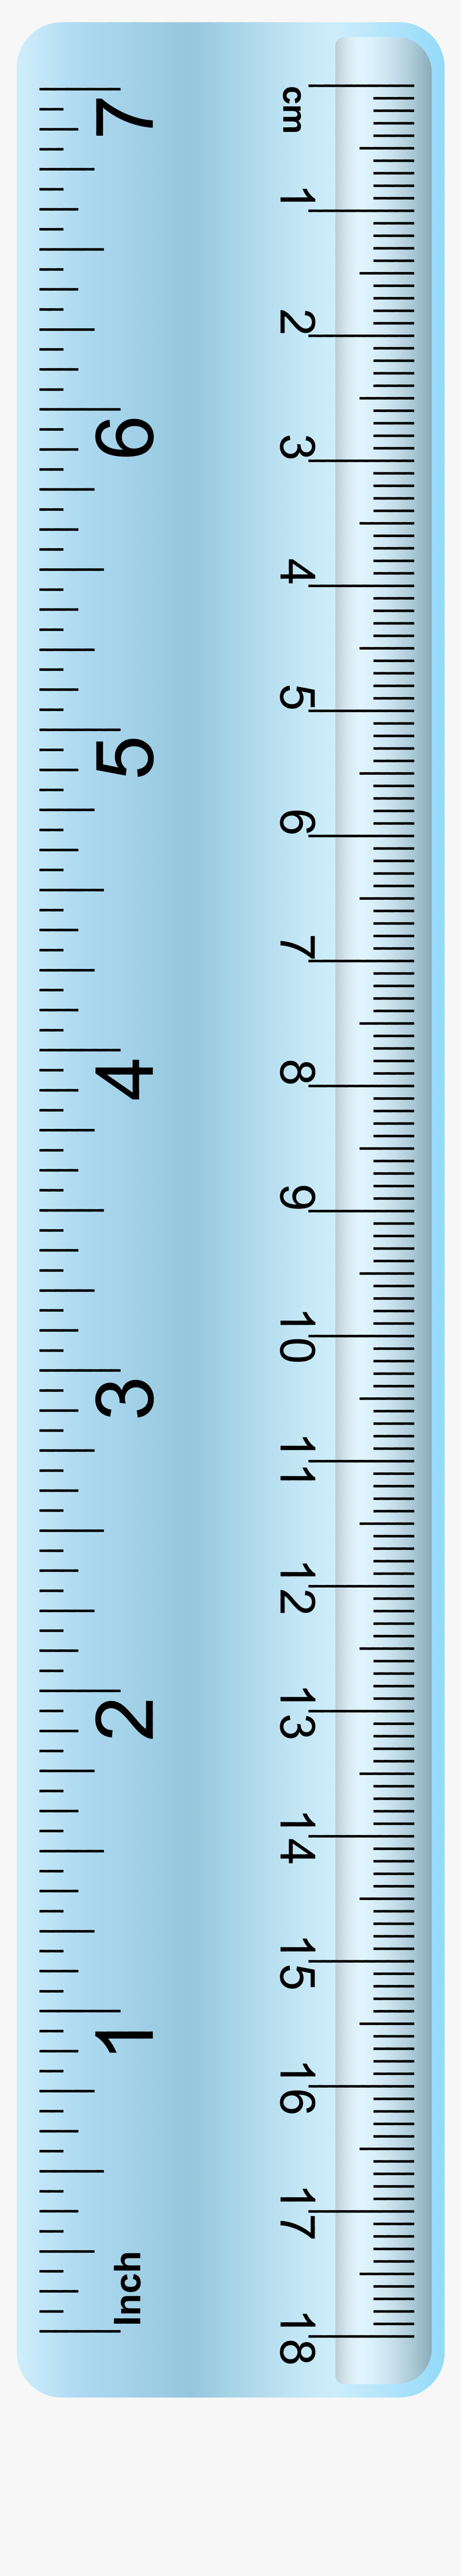 full size ruler